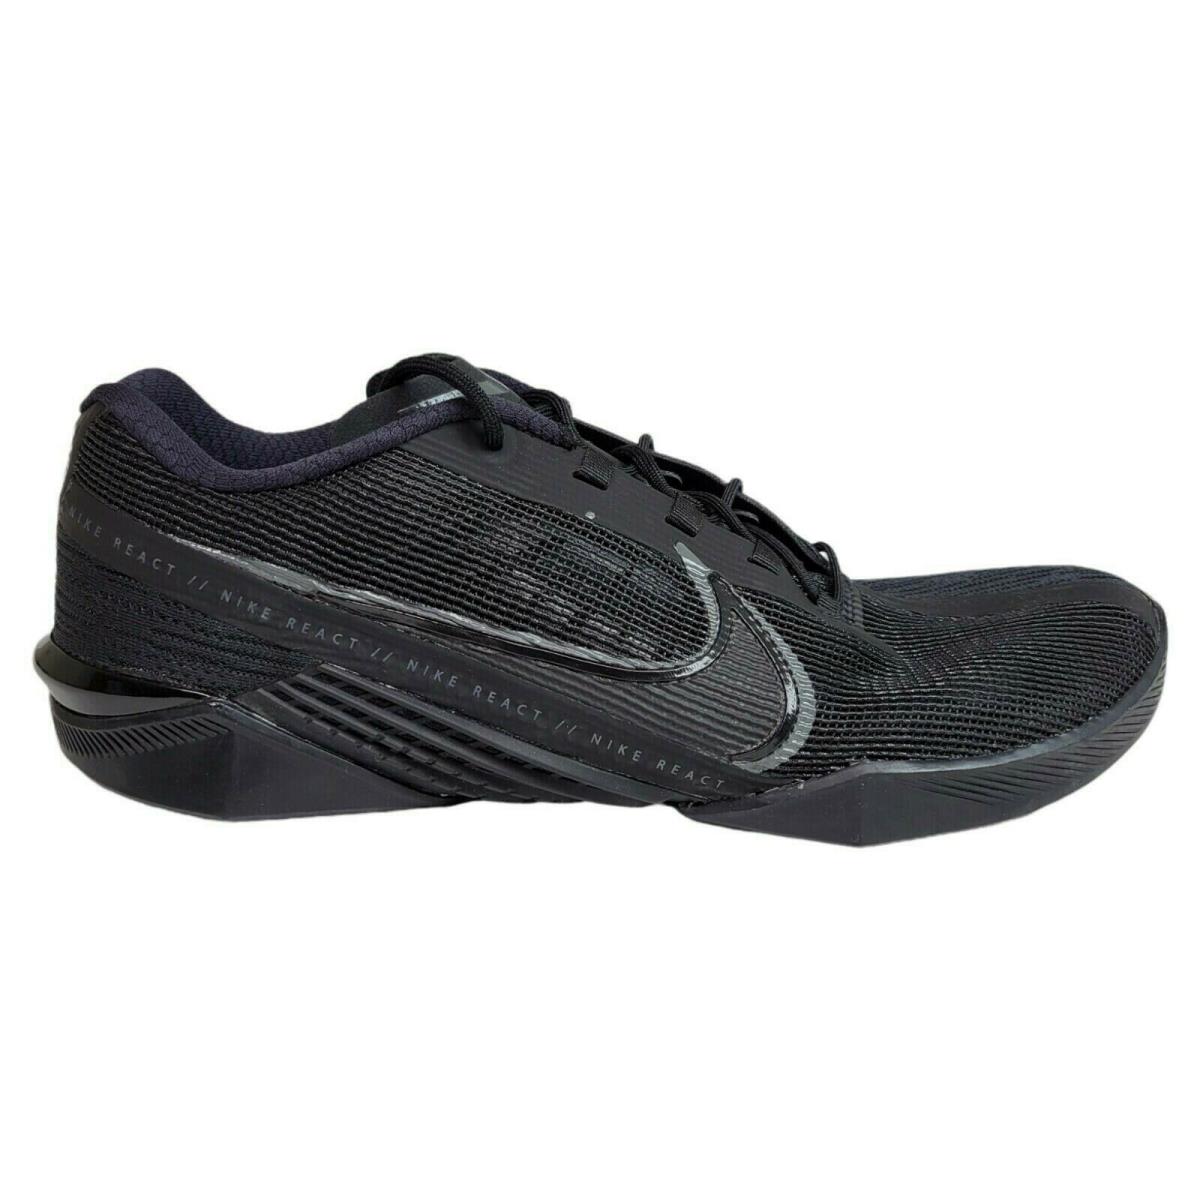 Nike Mens 12.5 React Metcon Turbo Black Gym Training Crossfit Shoes CT1243-002 - Black